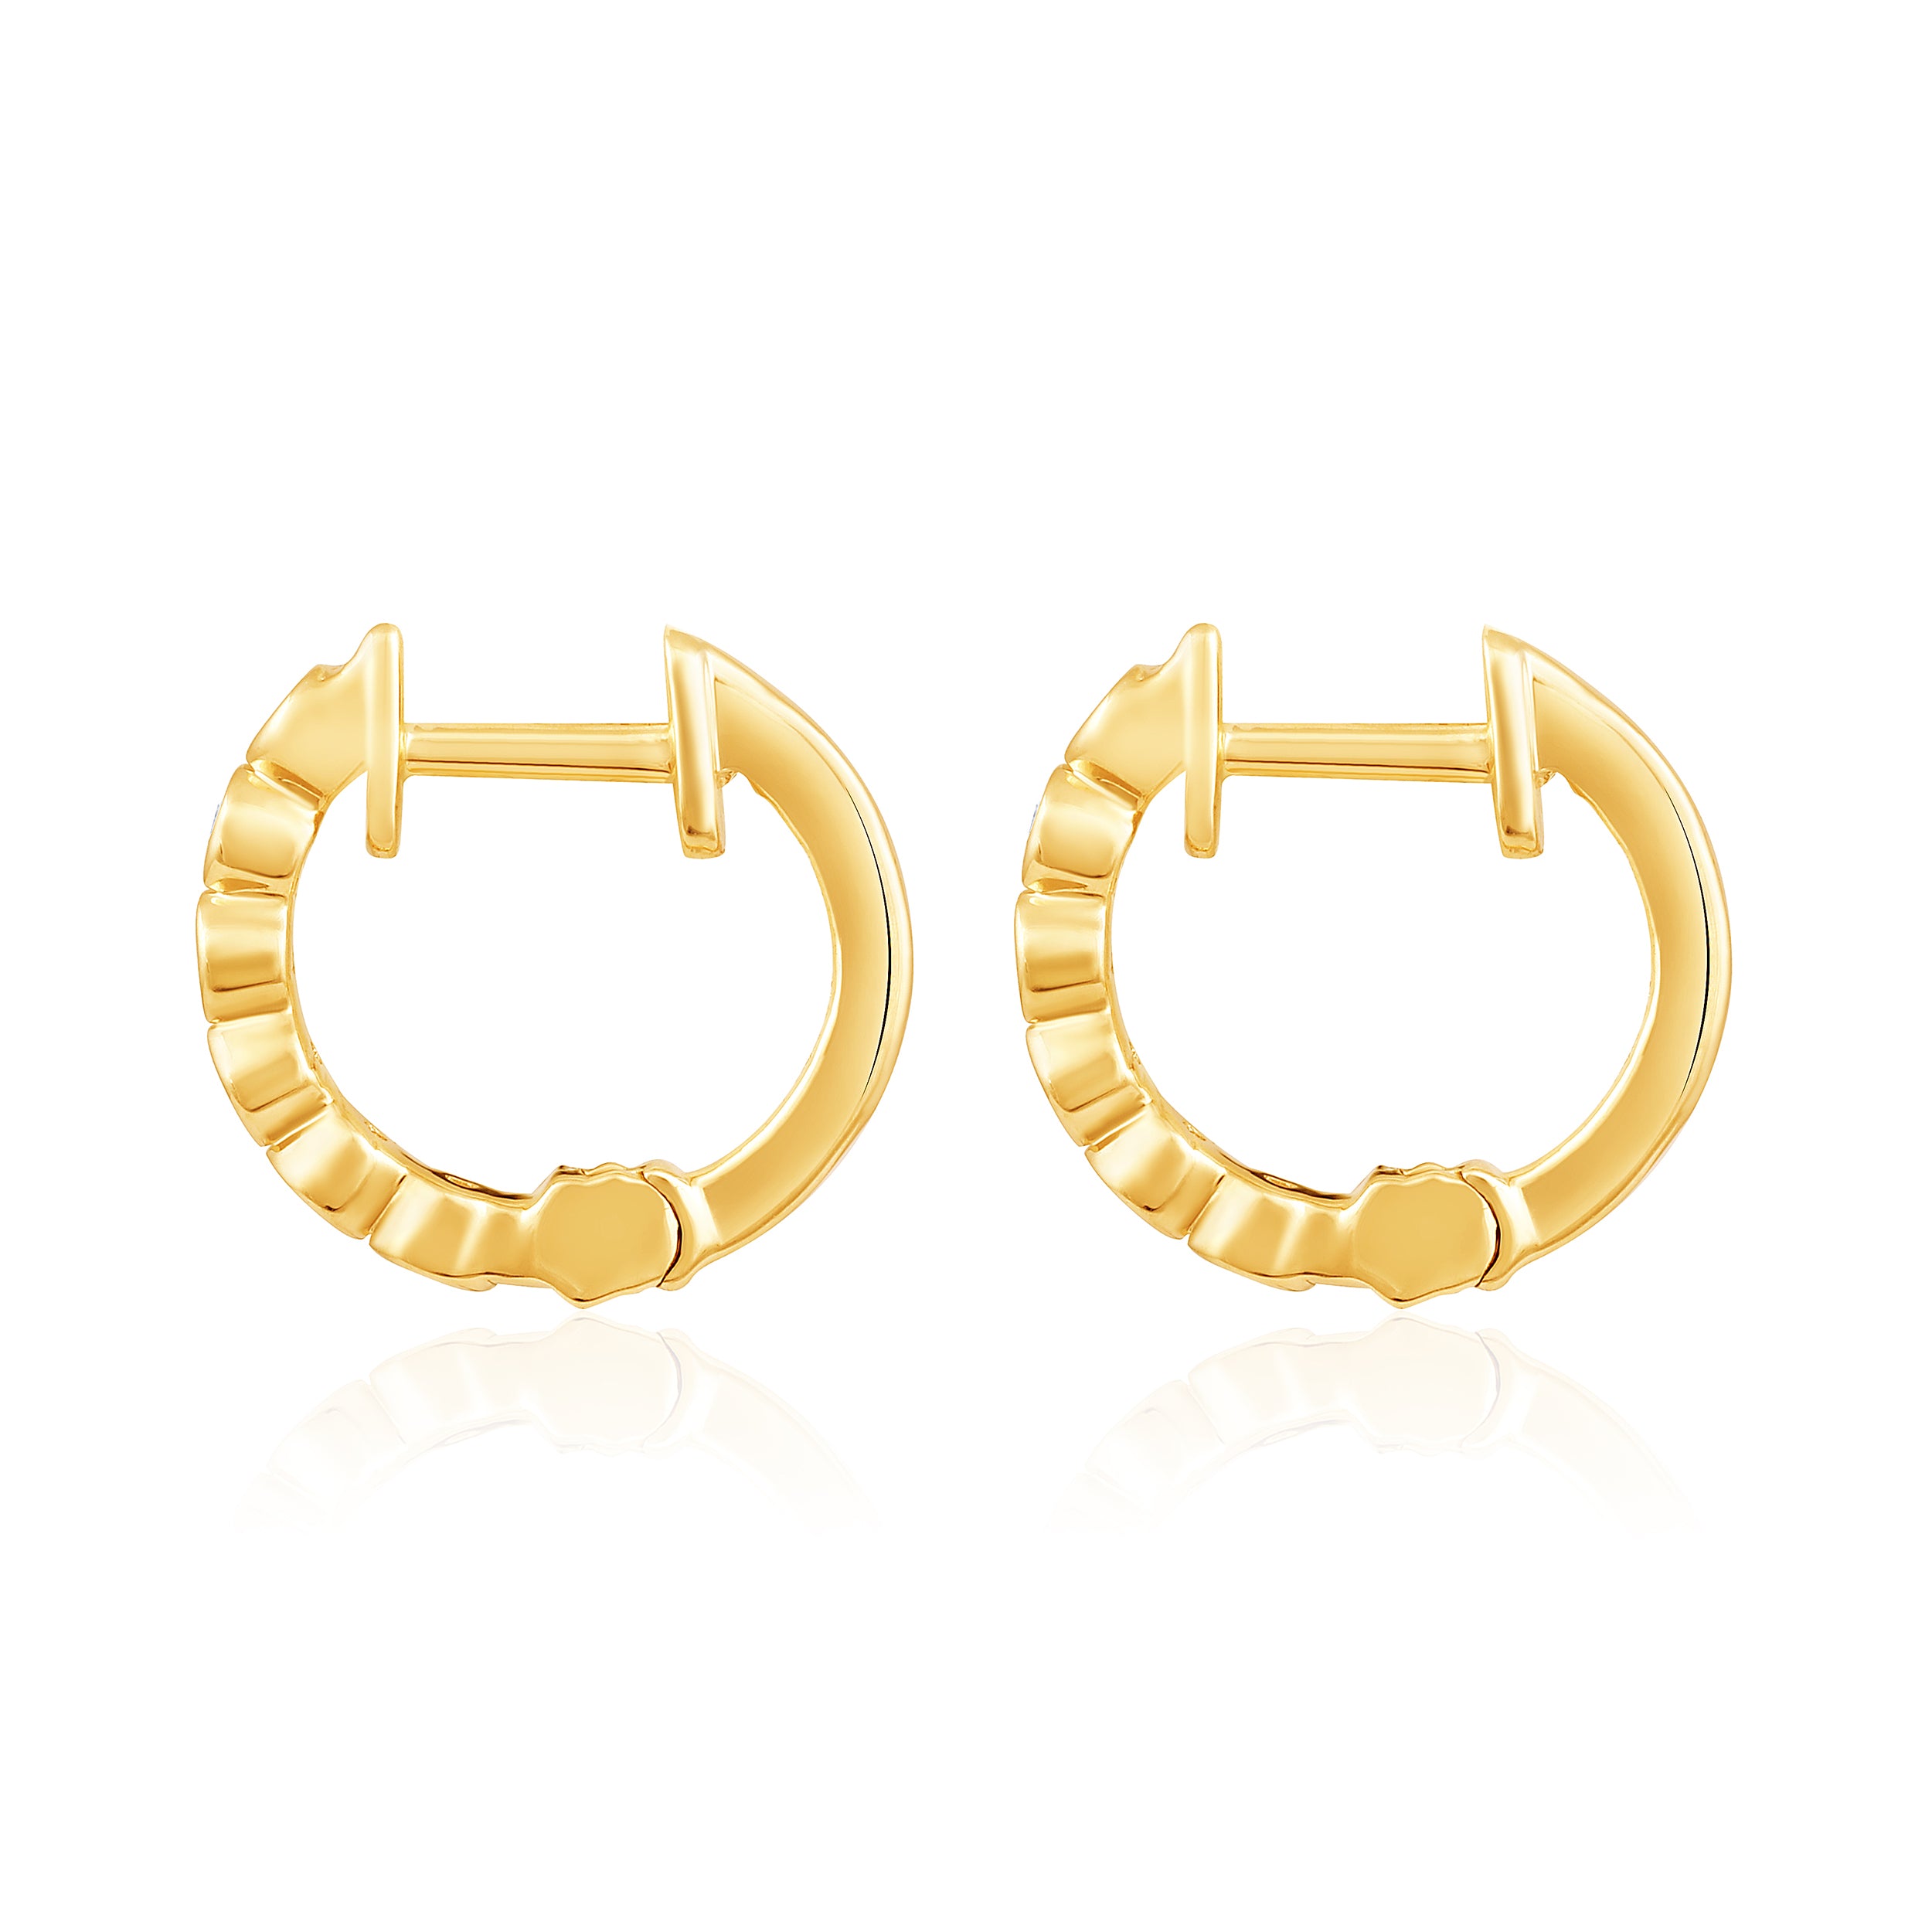 Certified 14K Gold 0.1ct Natural Diamond G-SI Bezel 11.5mm Hoop White Earrings